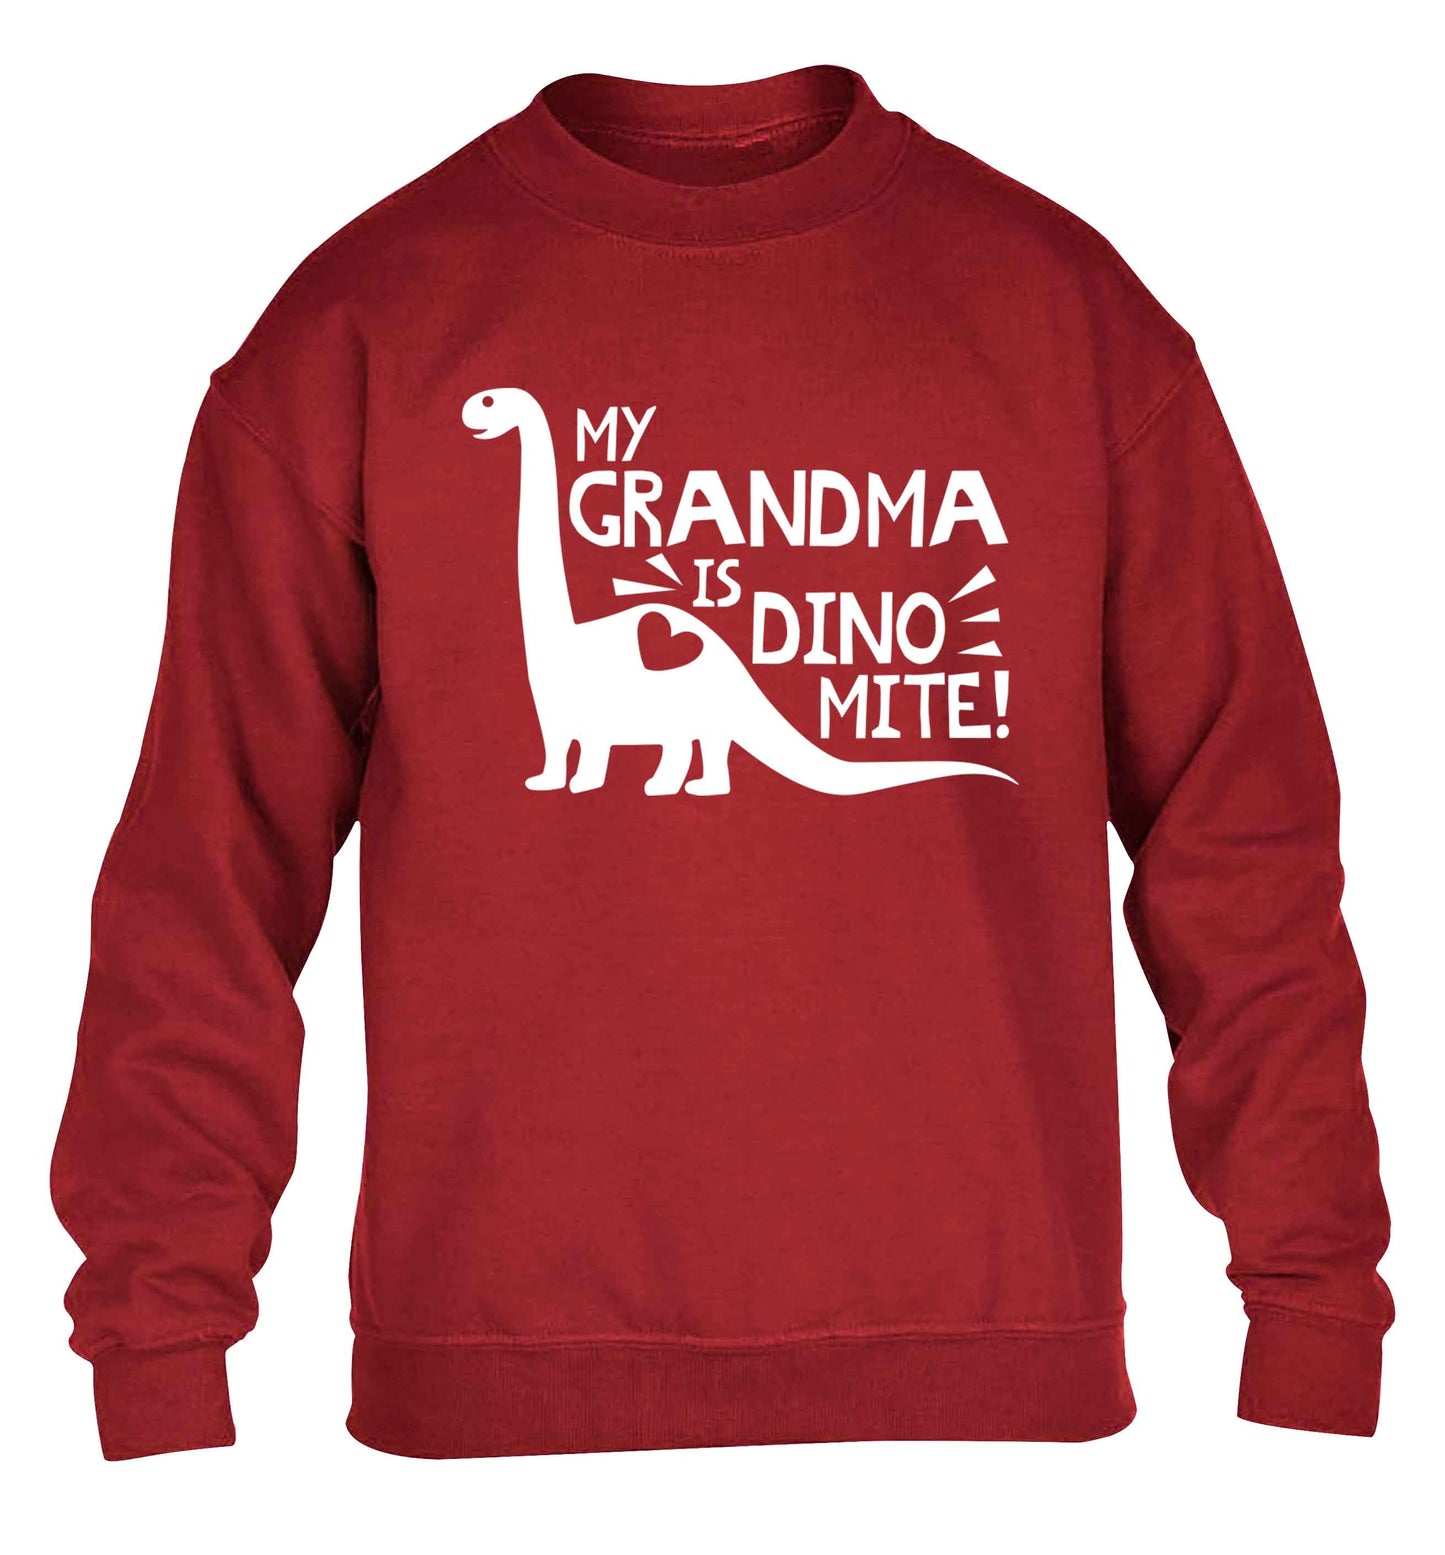 My grandma is dinomite! children's grey sweater 12-13 Years